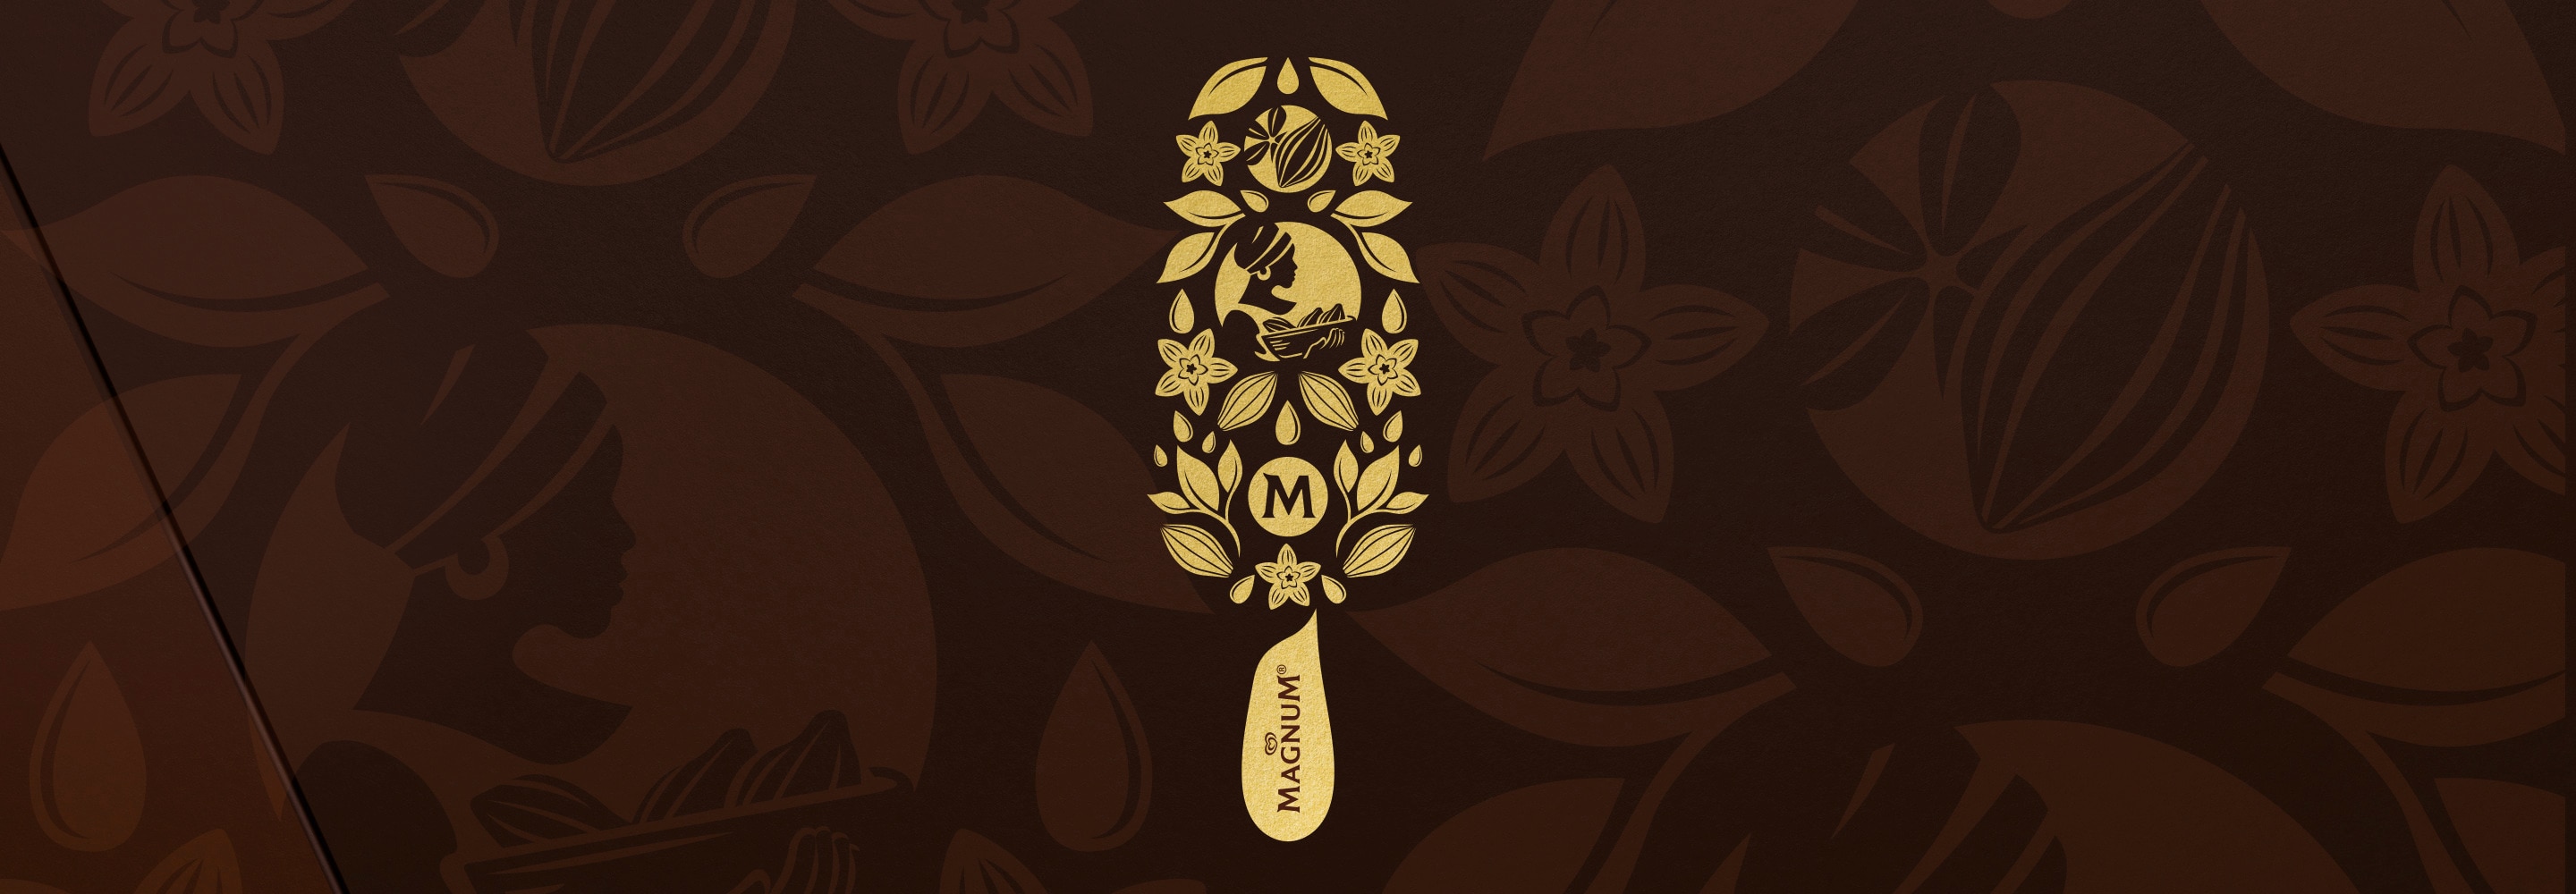 Goldene Magnum Glace Illustration auf braunem Hintergrund mit Vanilleblüten, Kakaofrüchten, Blättern und einer afrikanischen Frau mit Kopftuch, die einen Weidenkorb mit Kakaofrüchten trägt